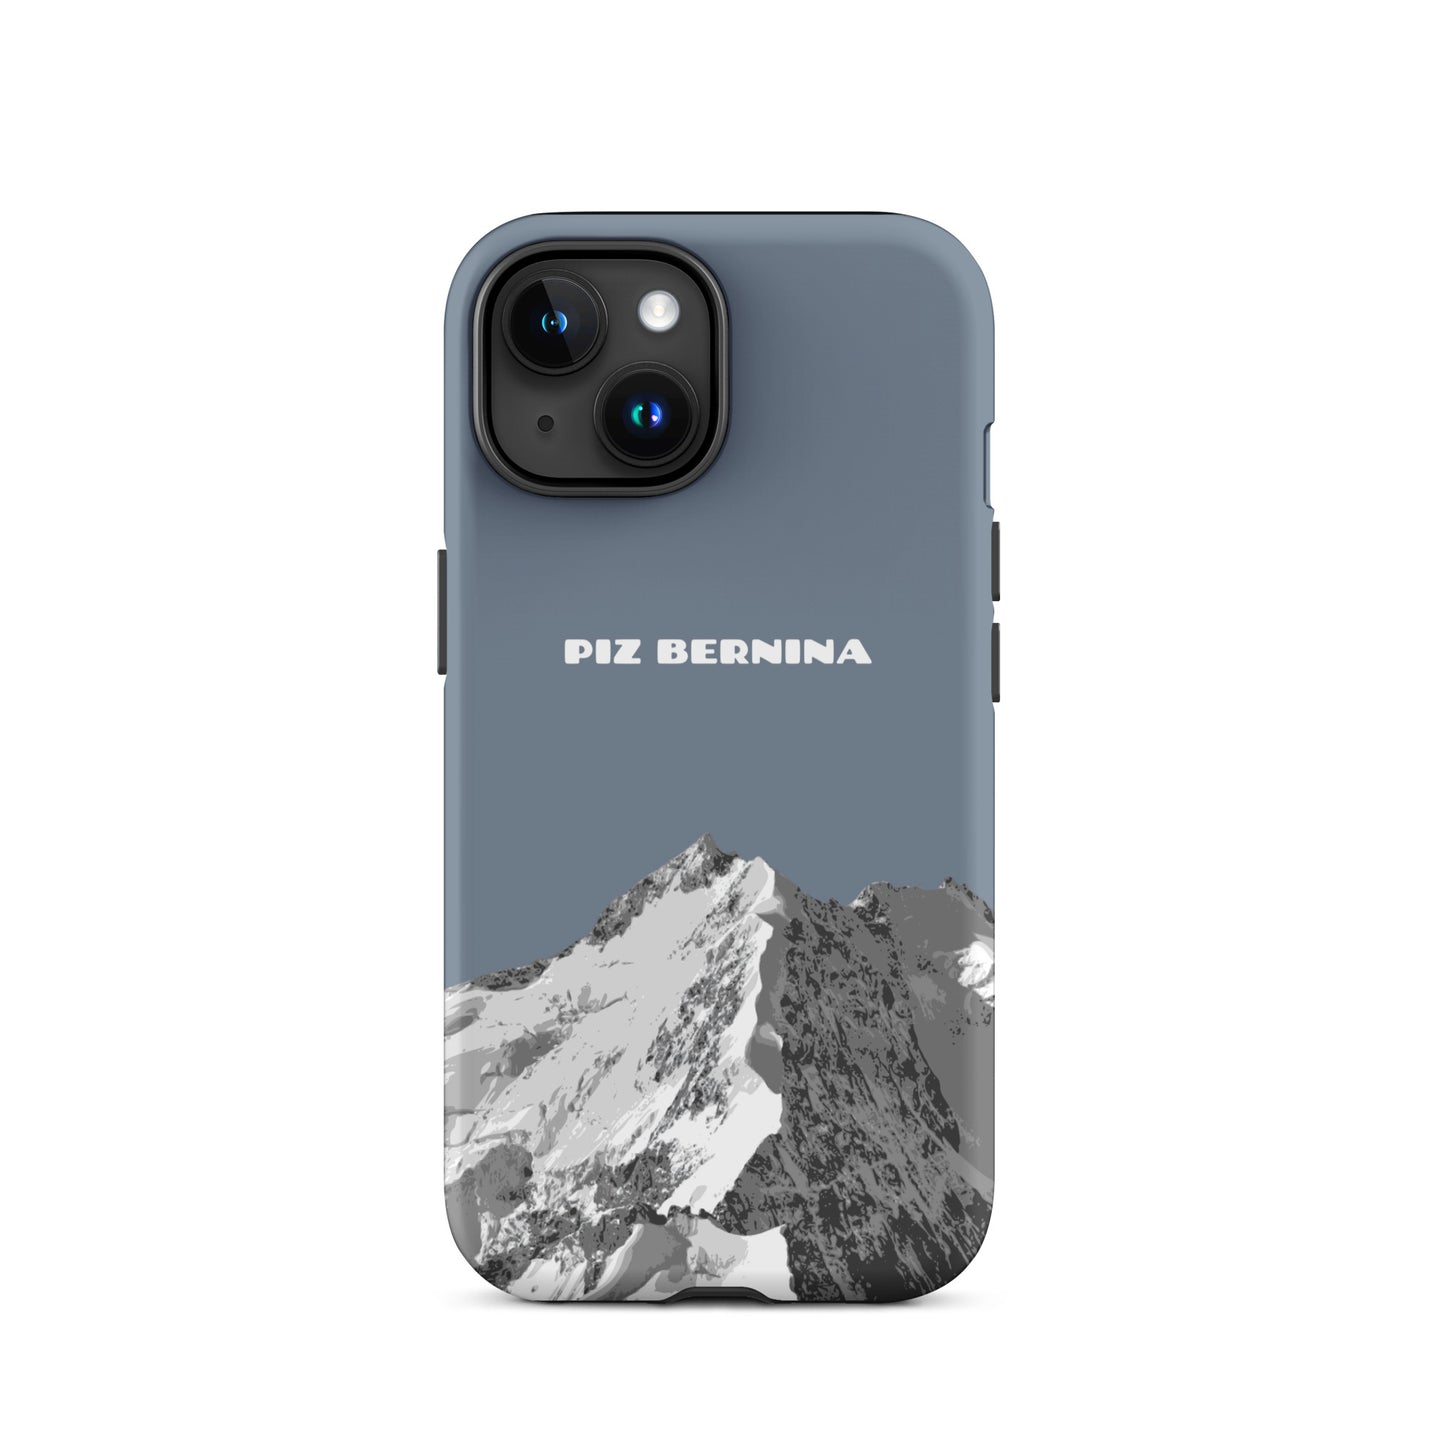 Hülle für das iPhone 15 von Apple in der Farbe Schiefergrau, dass den Piz Bernina in Graubünden zeigt.